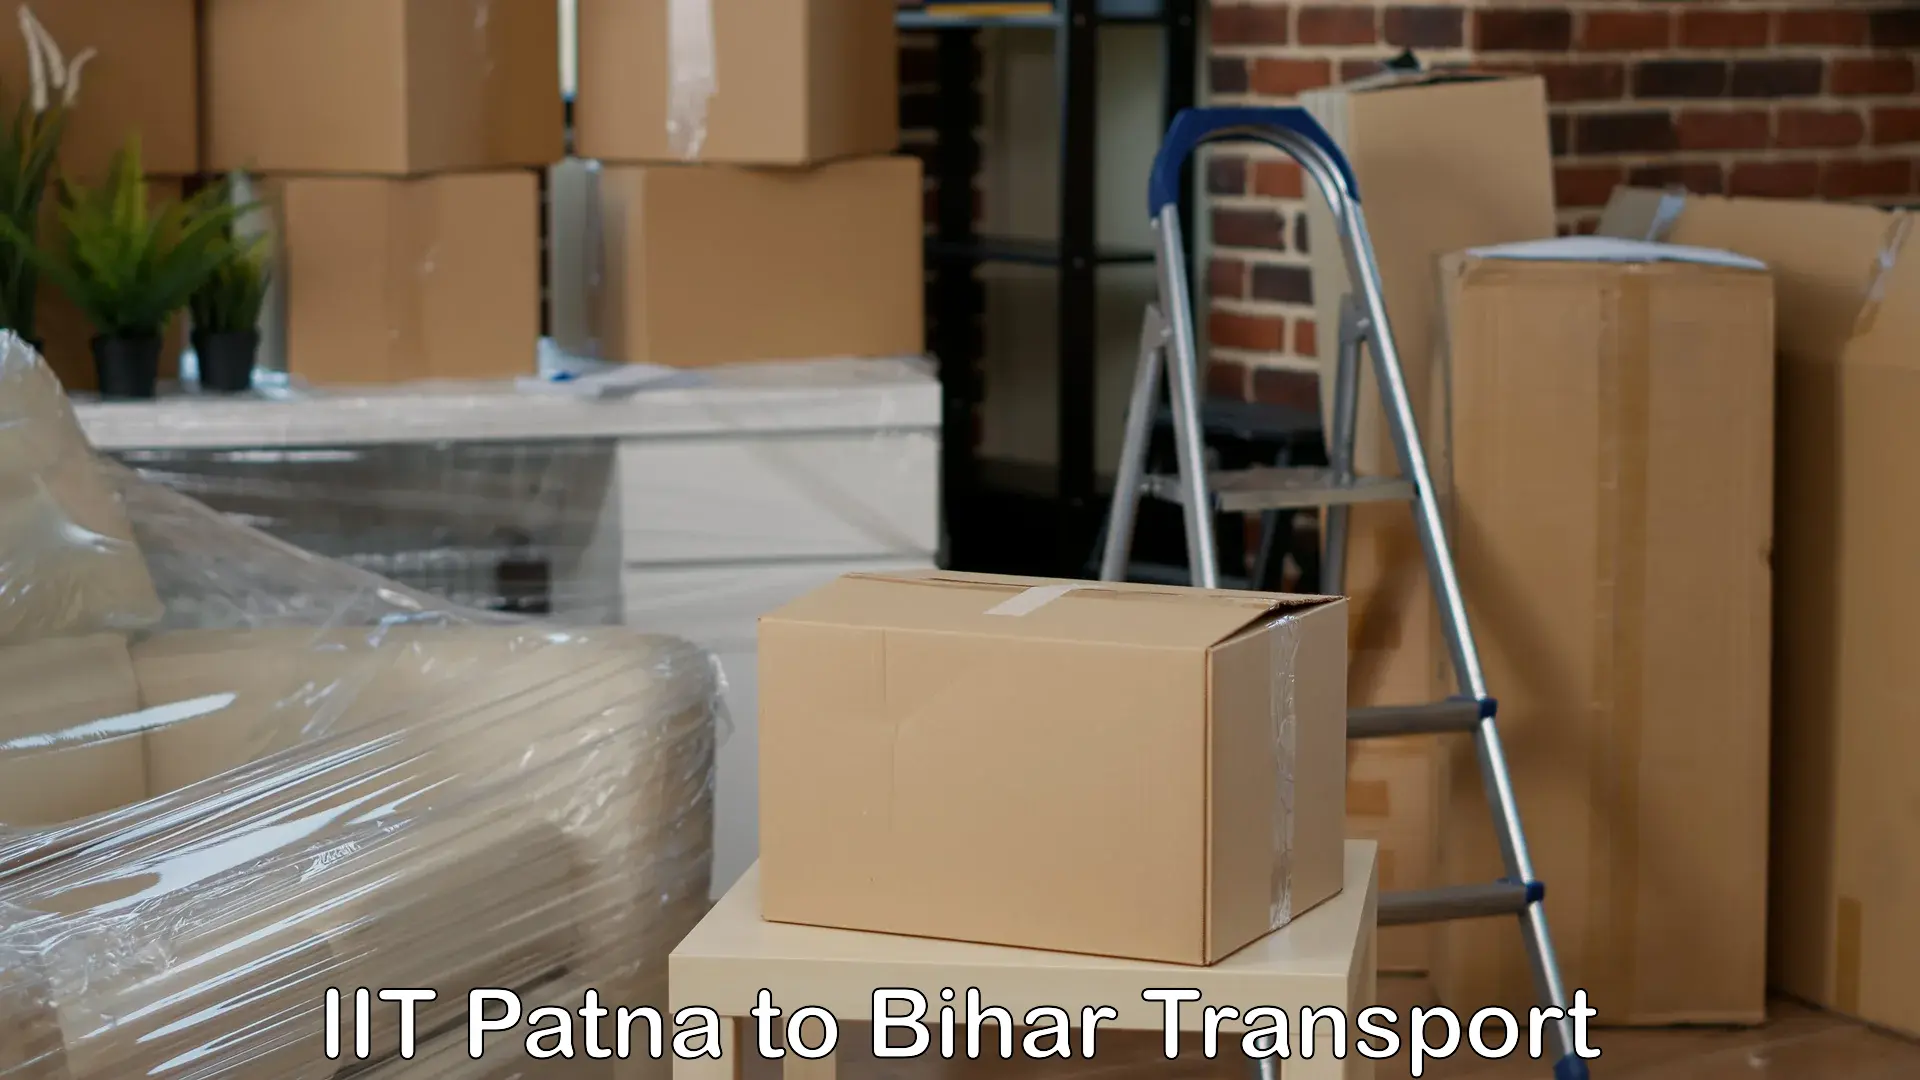 Bike shipping service IIT Patna to Fatwah